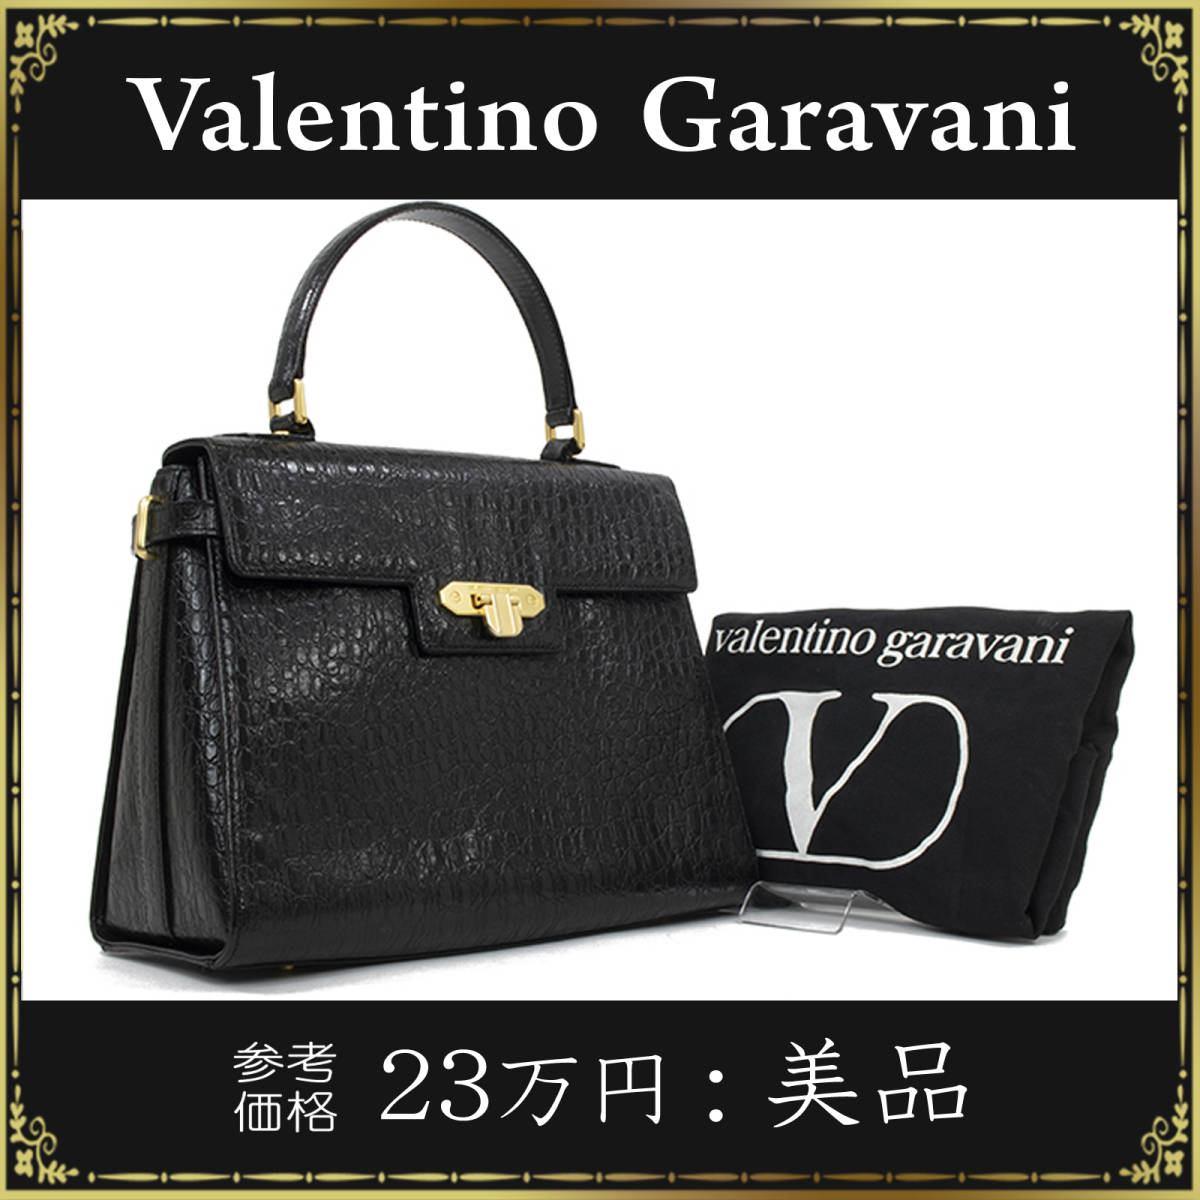 【全額返金保証・送料無料・美品】ヴァレンティノのハンドバッグ・正規品・綺麗・ヴィンテージ・本革・クロコ型押し・黒色・フォーマル・鞄